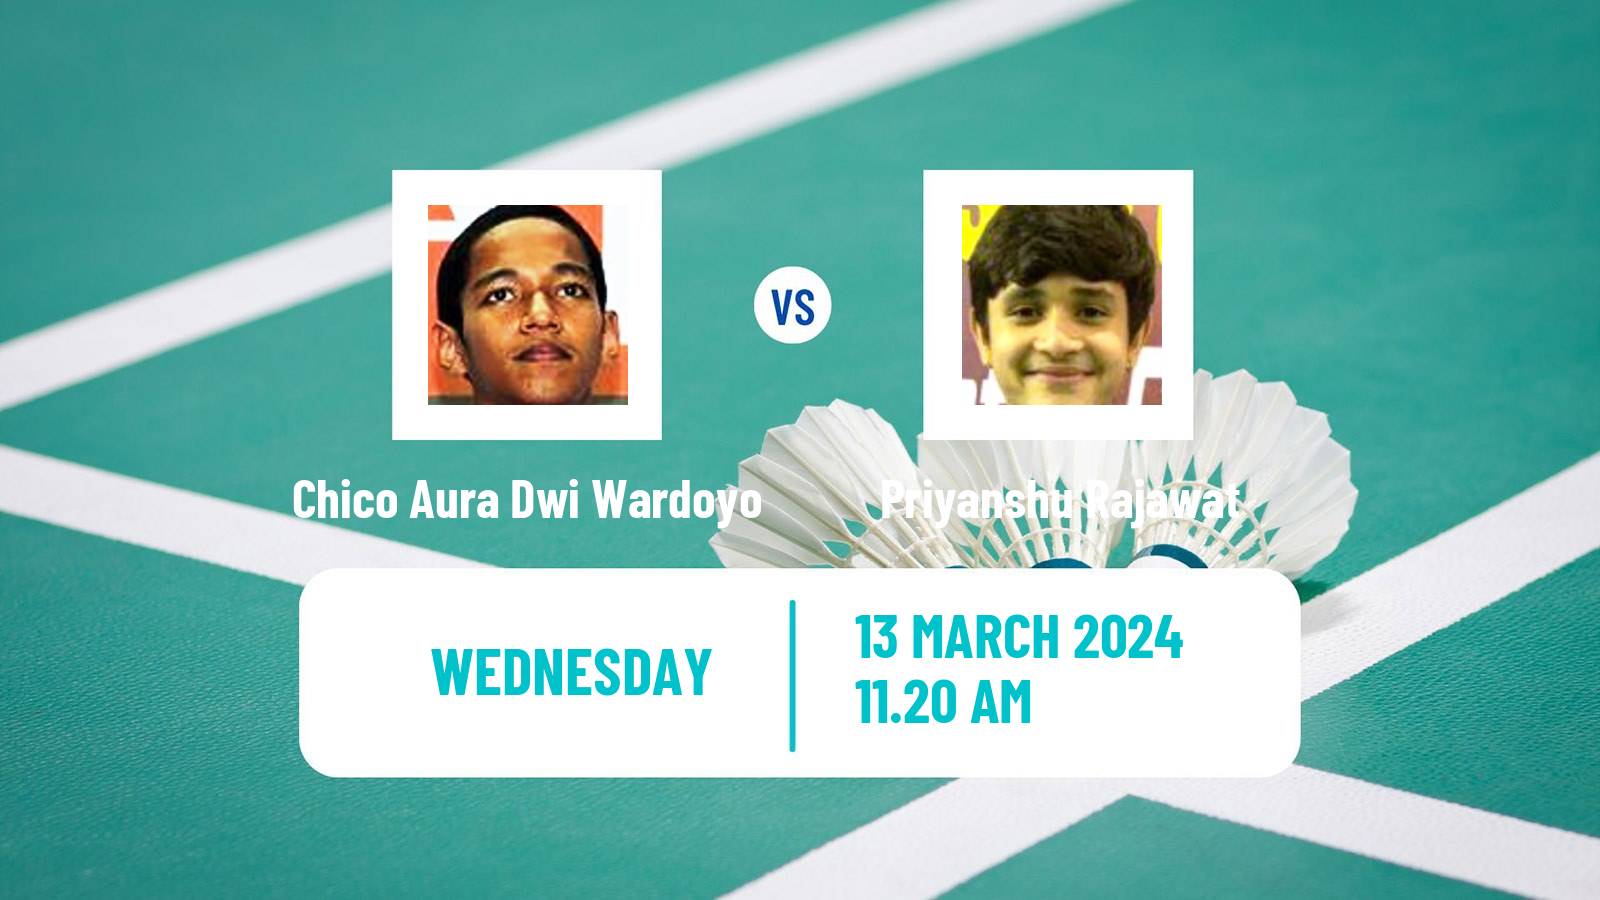 Badminton BWF World Tour All England Open Men Chico Aura Dwi Wardoyo - Priyanshu Rajawat